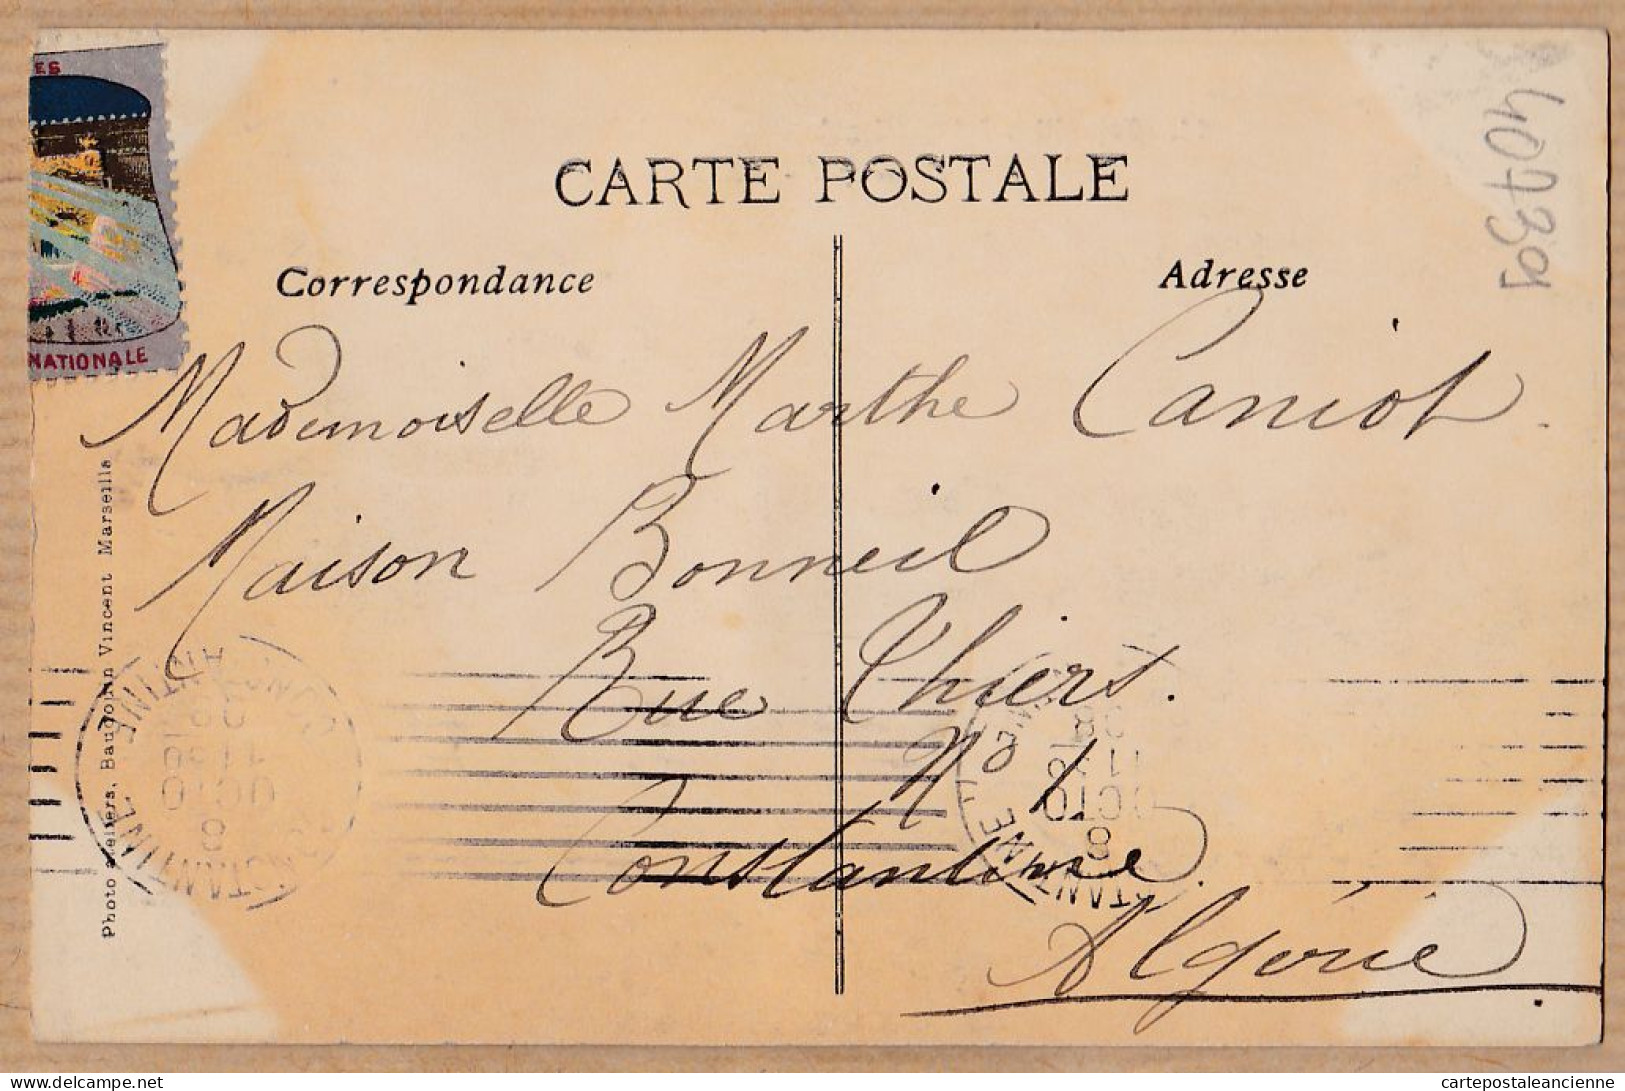 35034 / MARSEILLE Mas Provençal Ensemble-Exposition Electricité 1908 Vignette-Marthe CANIOT Maison Bonneil Constantine - Electrical Trade Shows And Other